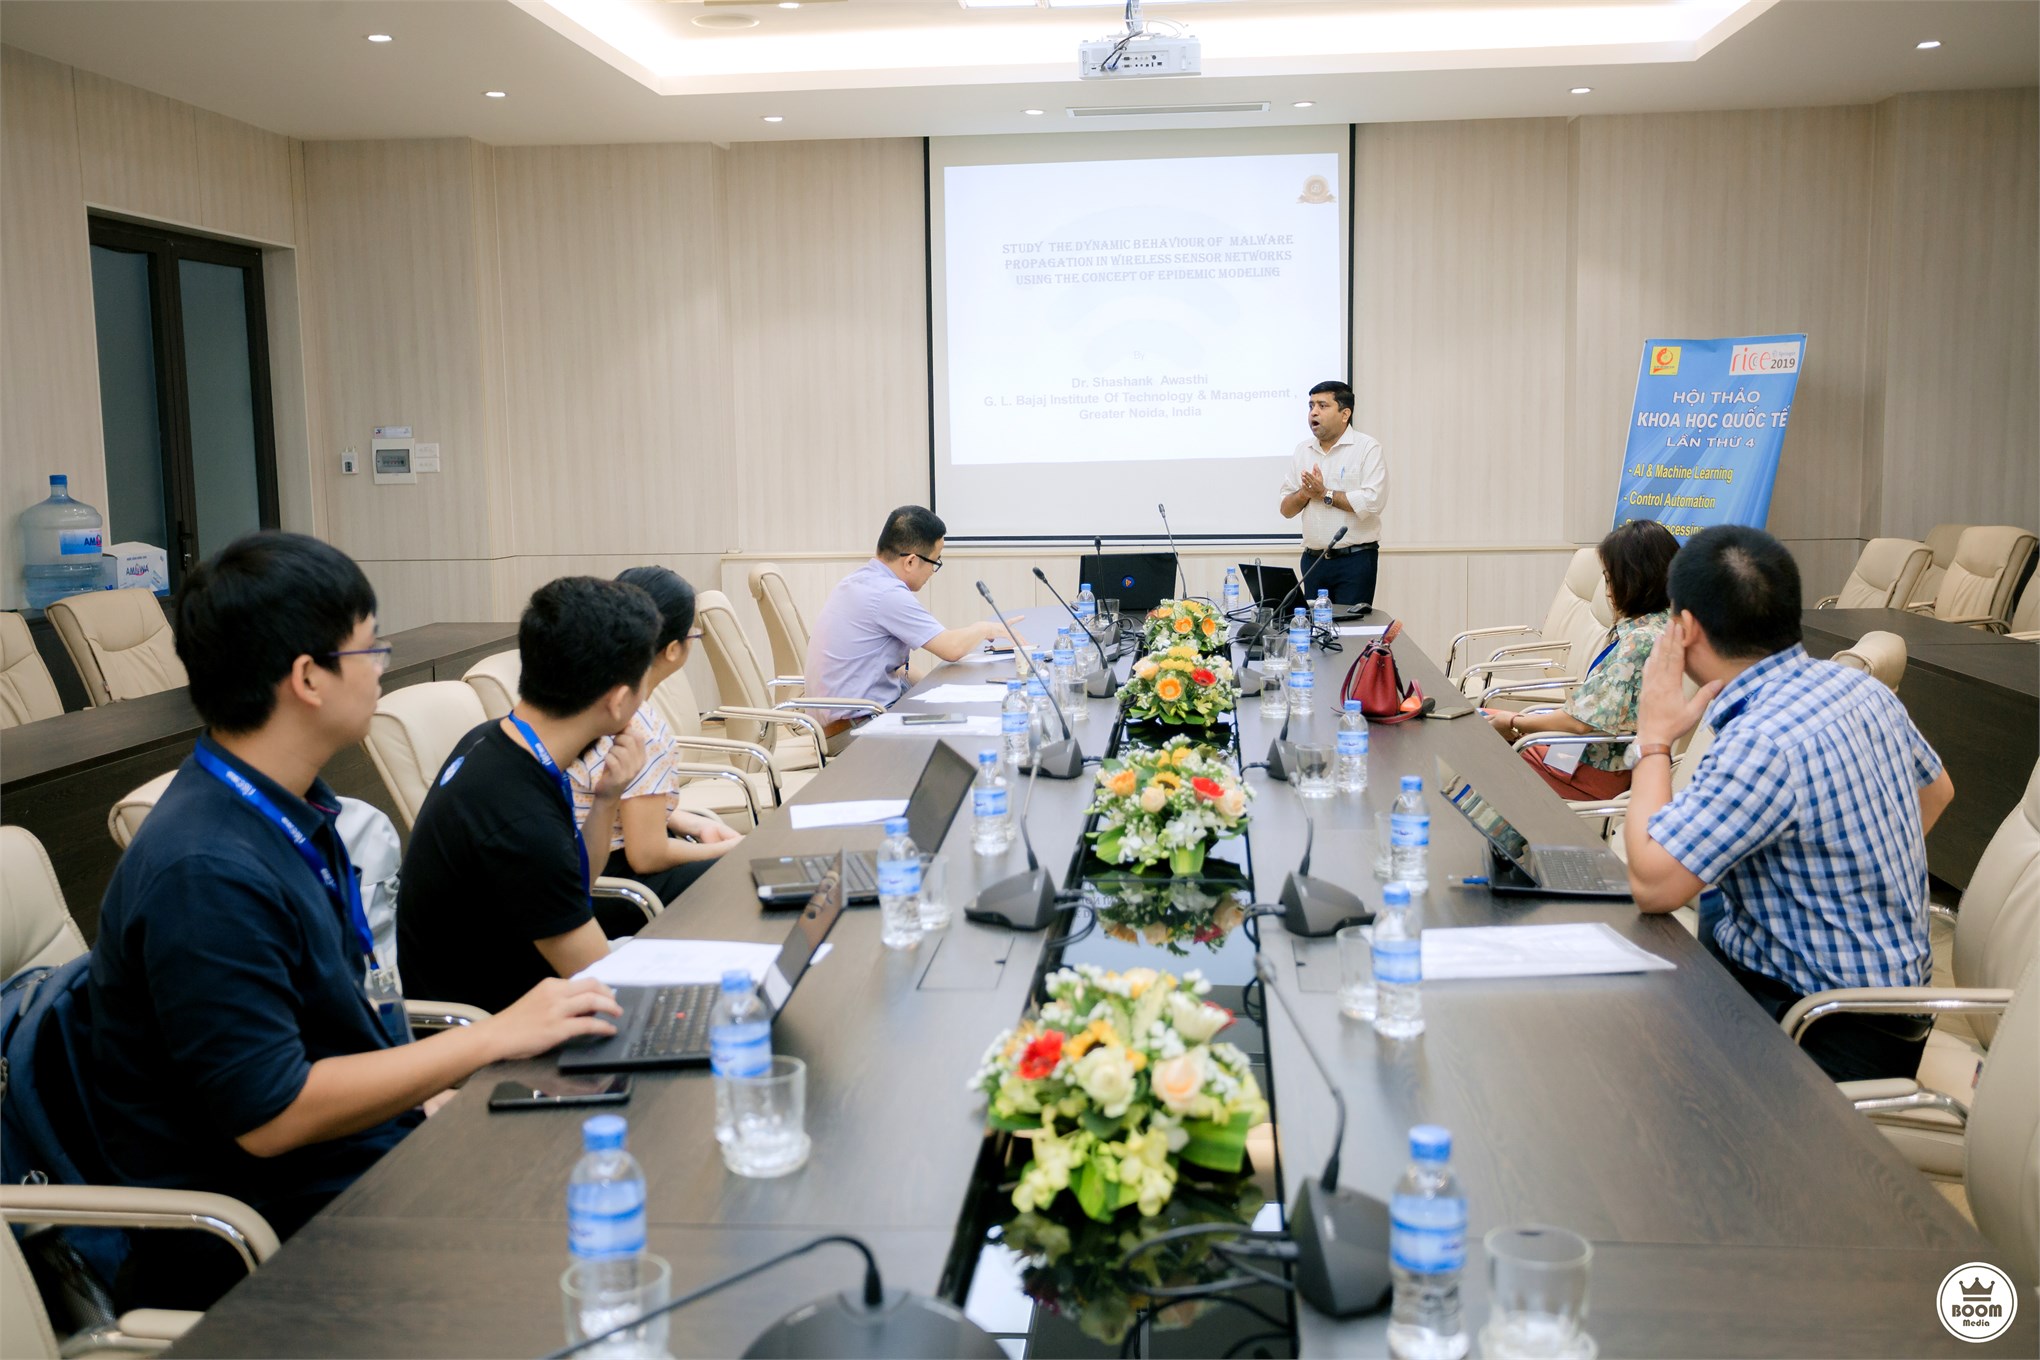 Trường Đại học Công nghiệp Hà Nội tổ chức Hội thảo Khoa học Quốc tế lần thứ 4 “Nghiên cứu về tính toán thông minh trong kỹ thuật”